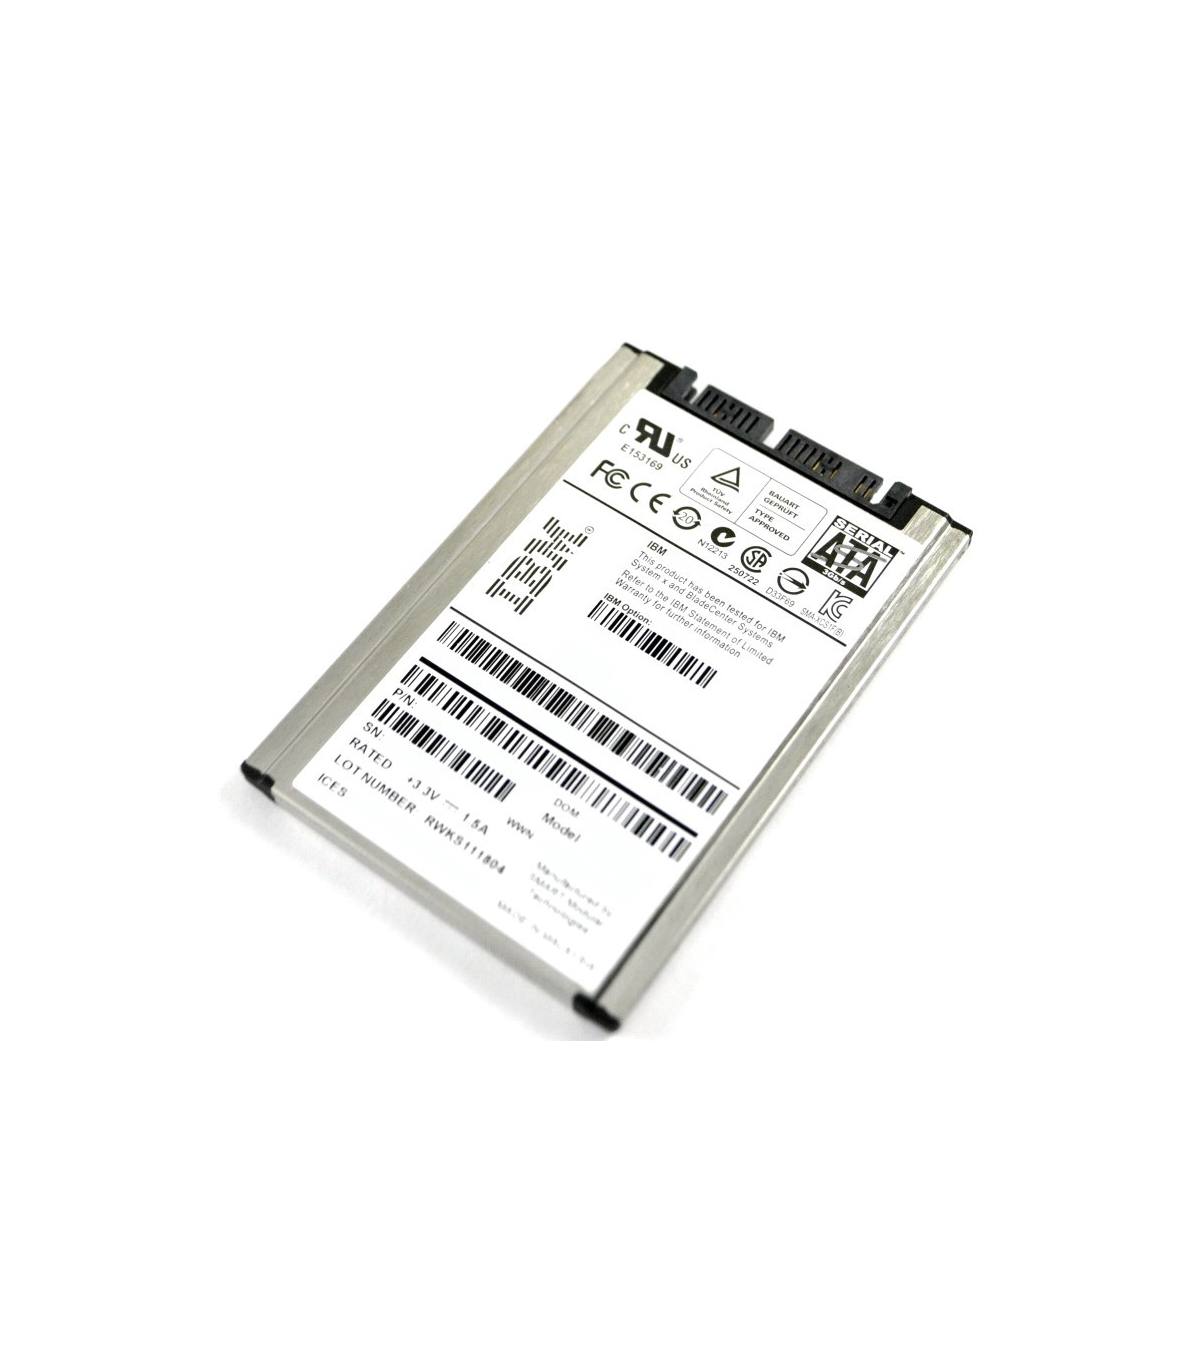 IBM 50GB 1,8” SATA SSD 43W7726 SG9XCS1F